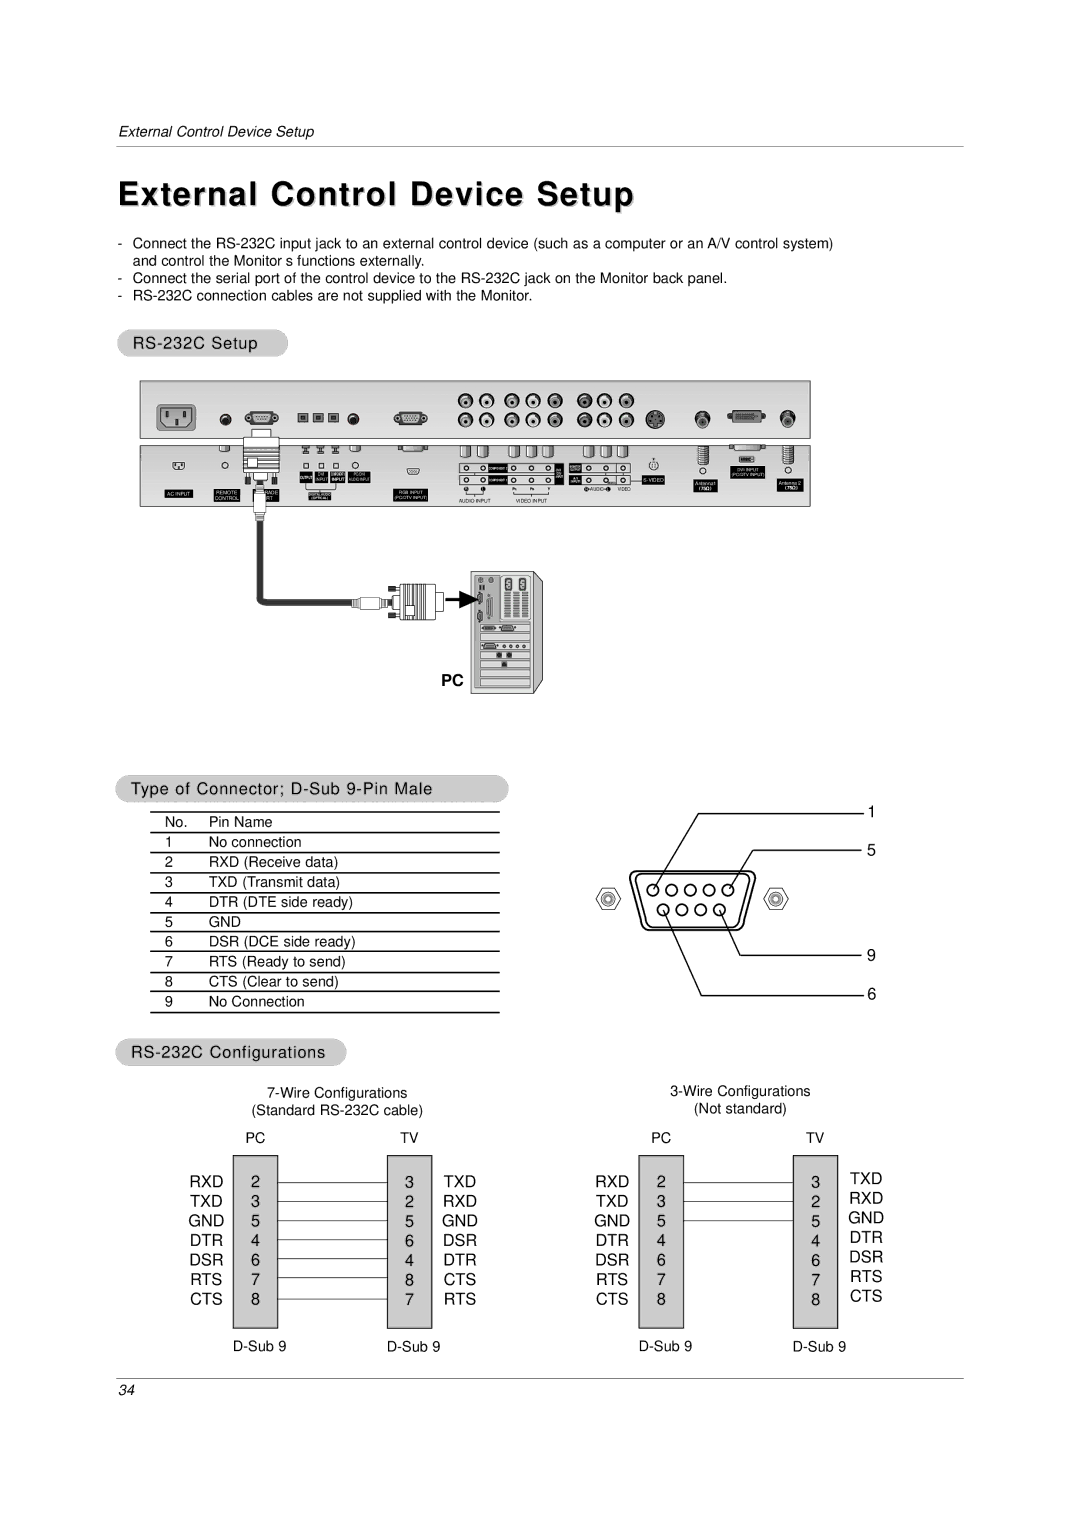 LG Electronics DU-42LZ30, DU-30LZ30 External Control Device Setup, RS-232C Setup, Type of Connector D-Sub 9-Pin Male 